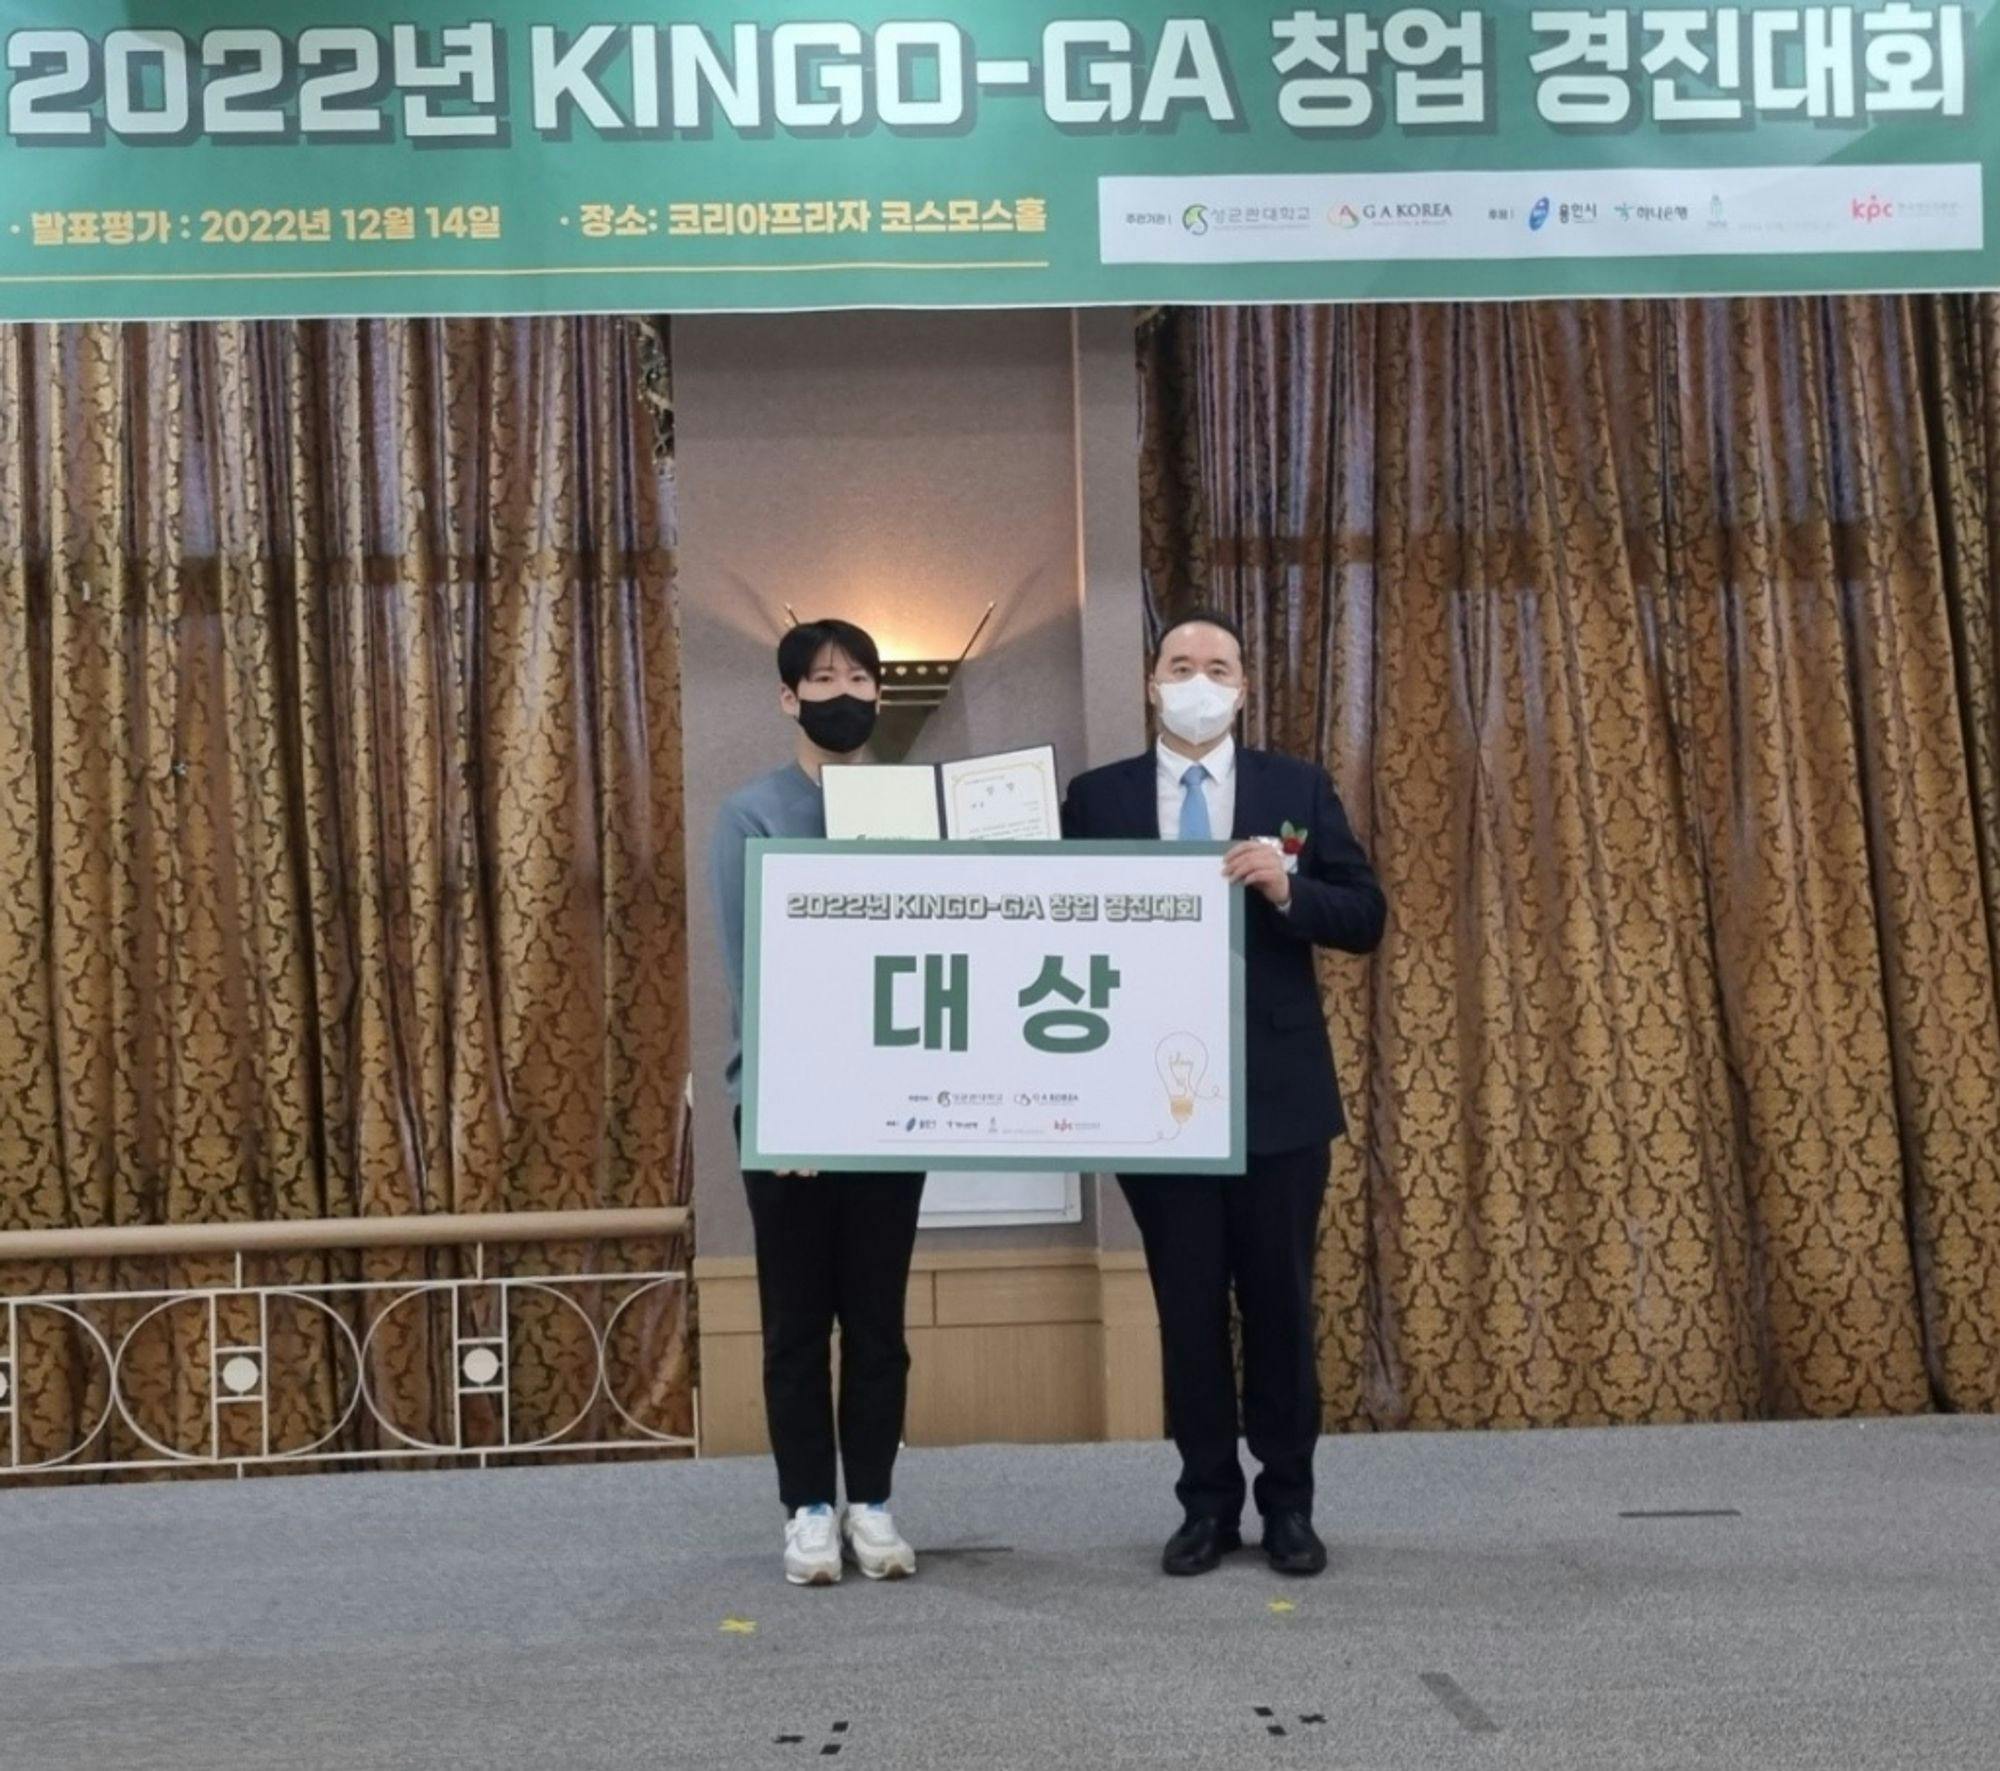 성균관대-GA 코리아, '2022 KINGO-GA 창업경진대회' 개최 - 머니투데이